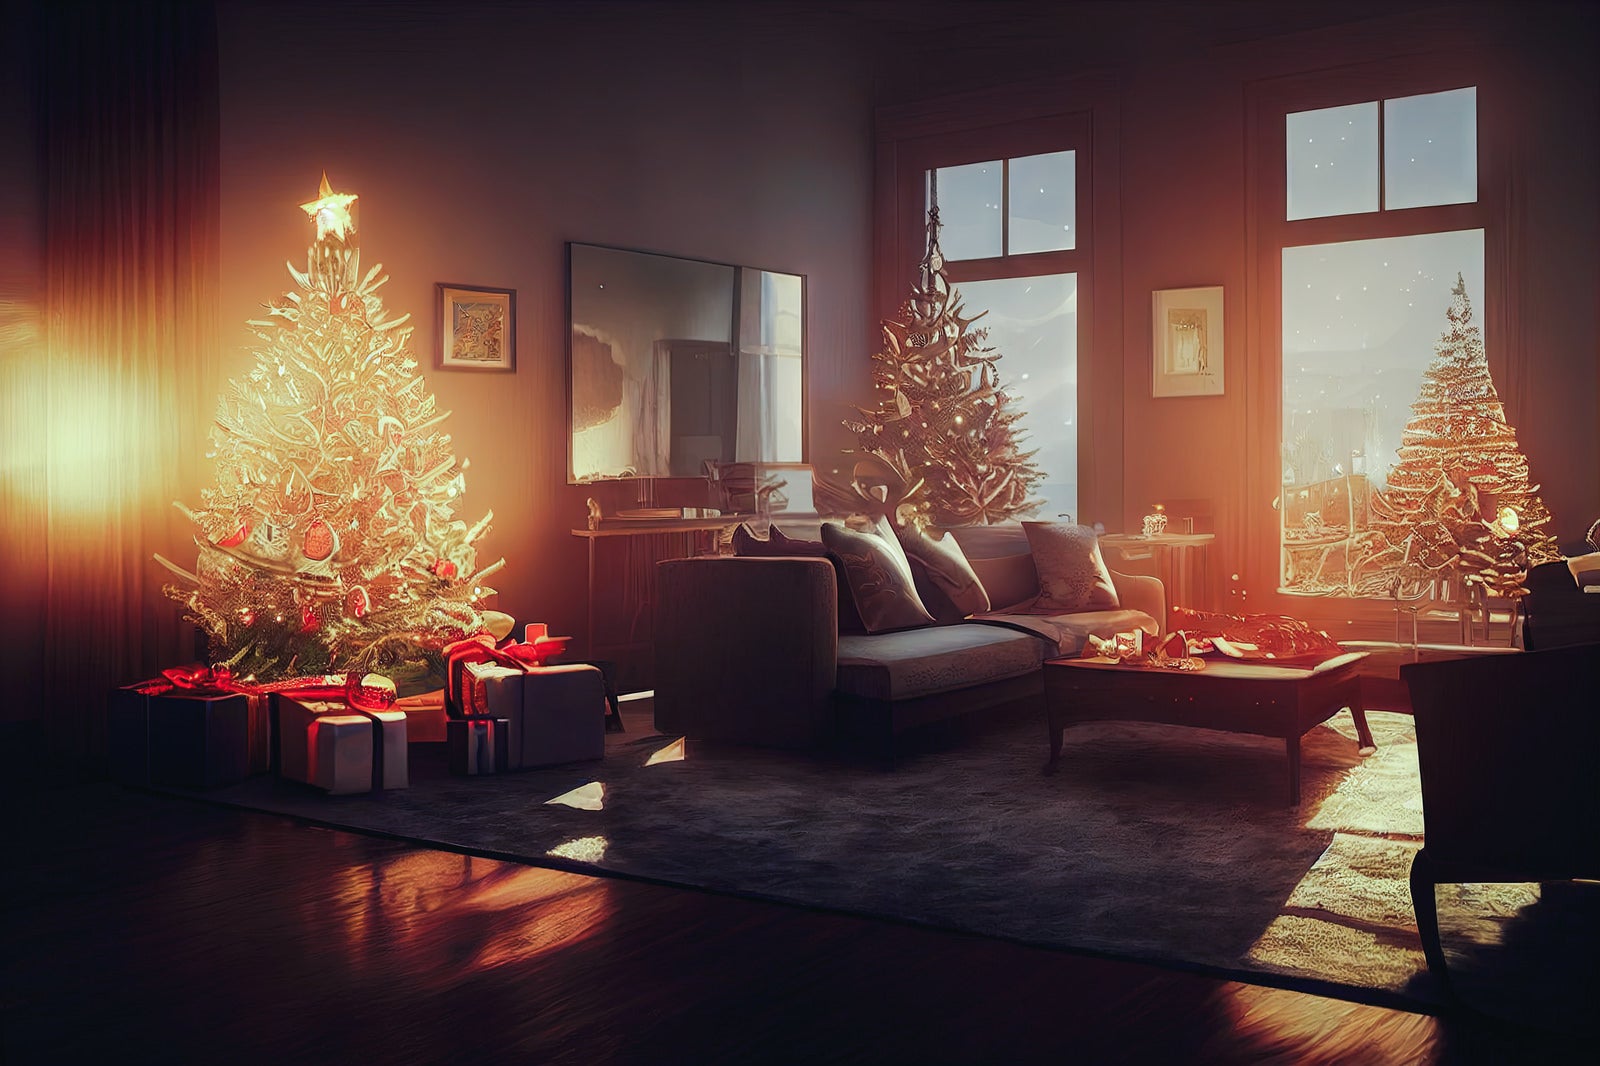 「クリスマス・イブの雰囲気の部屋」の写真